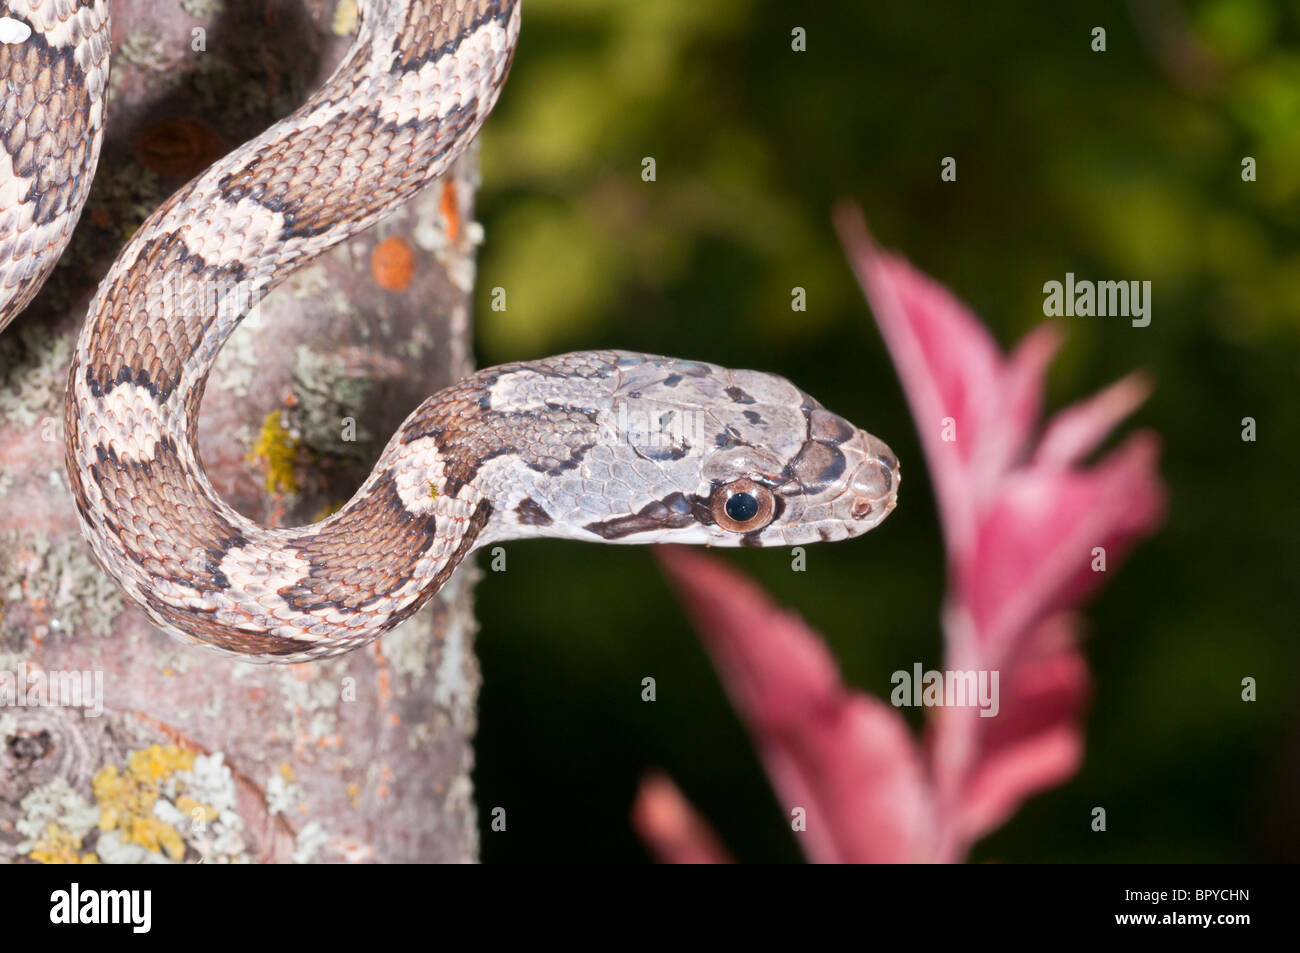 Texas rat snake, Elaphe obsoleta lindheimeri, native to Texas, Louisiana, Arkansas and Oklahoma Stock Photo